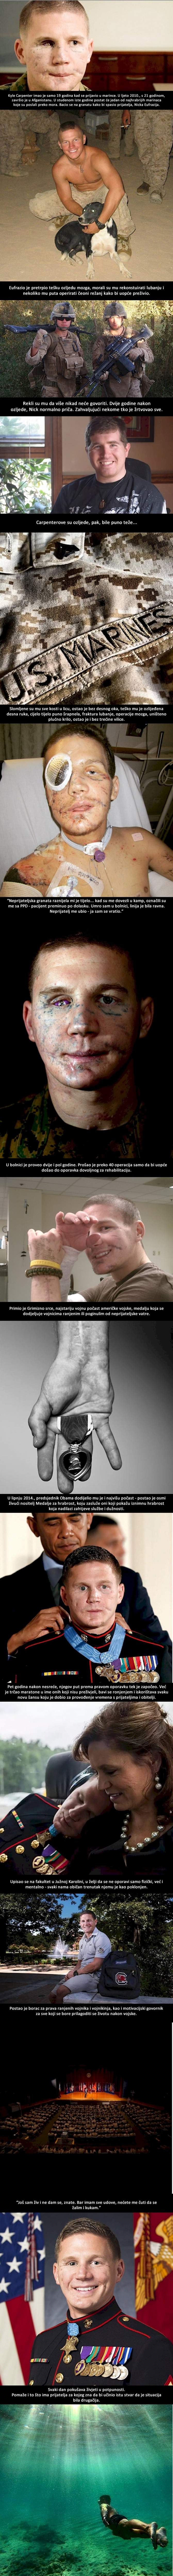 Prije pet godina marinac se bacio na granatu da spasi prijatelja, ovo je on danas